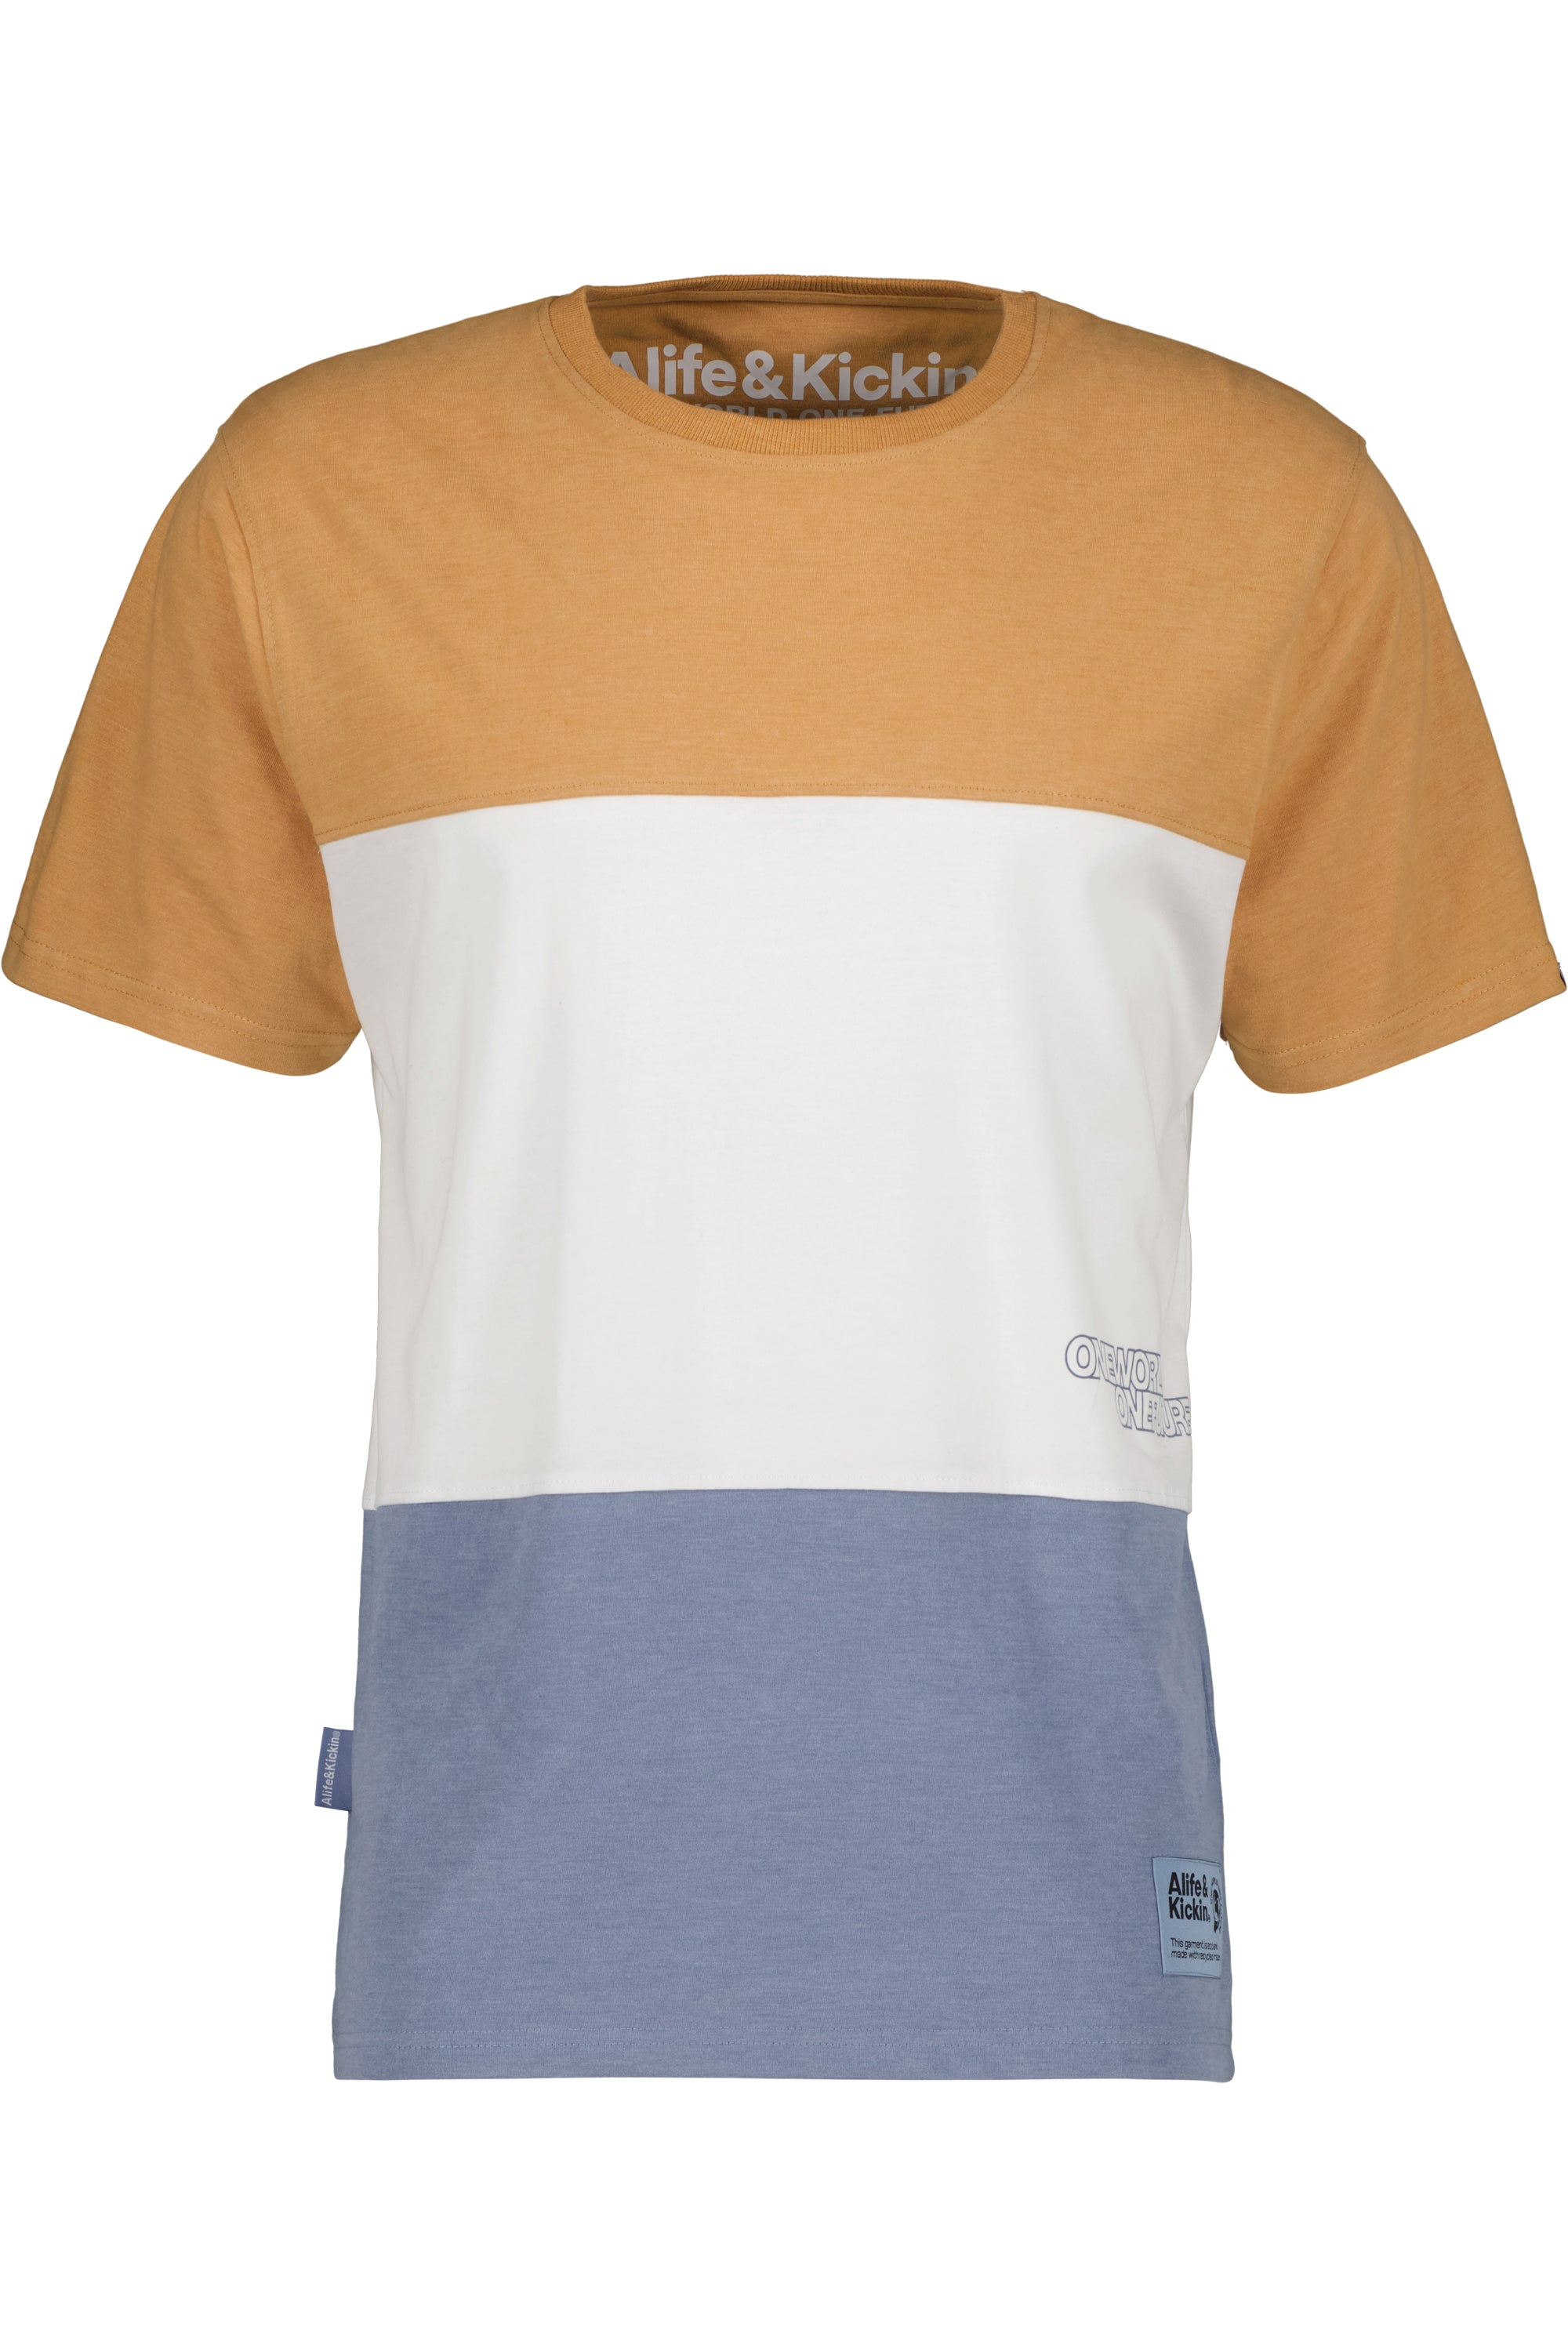 Vielseitiger Begleiter - BenAK A T-Shirt für Herren in weicher Jerseyqualität Dunkelblau